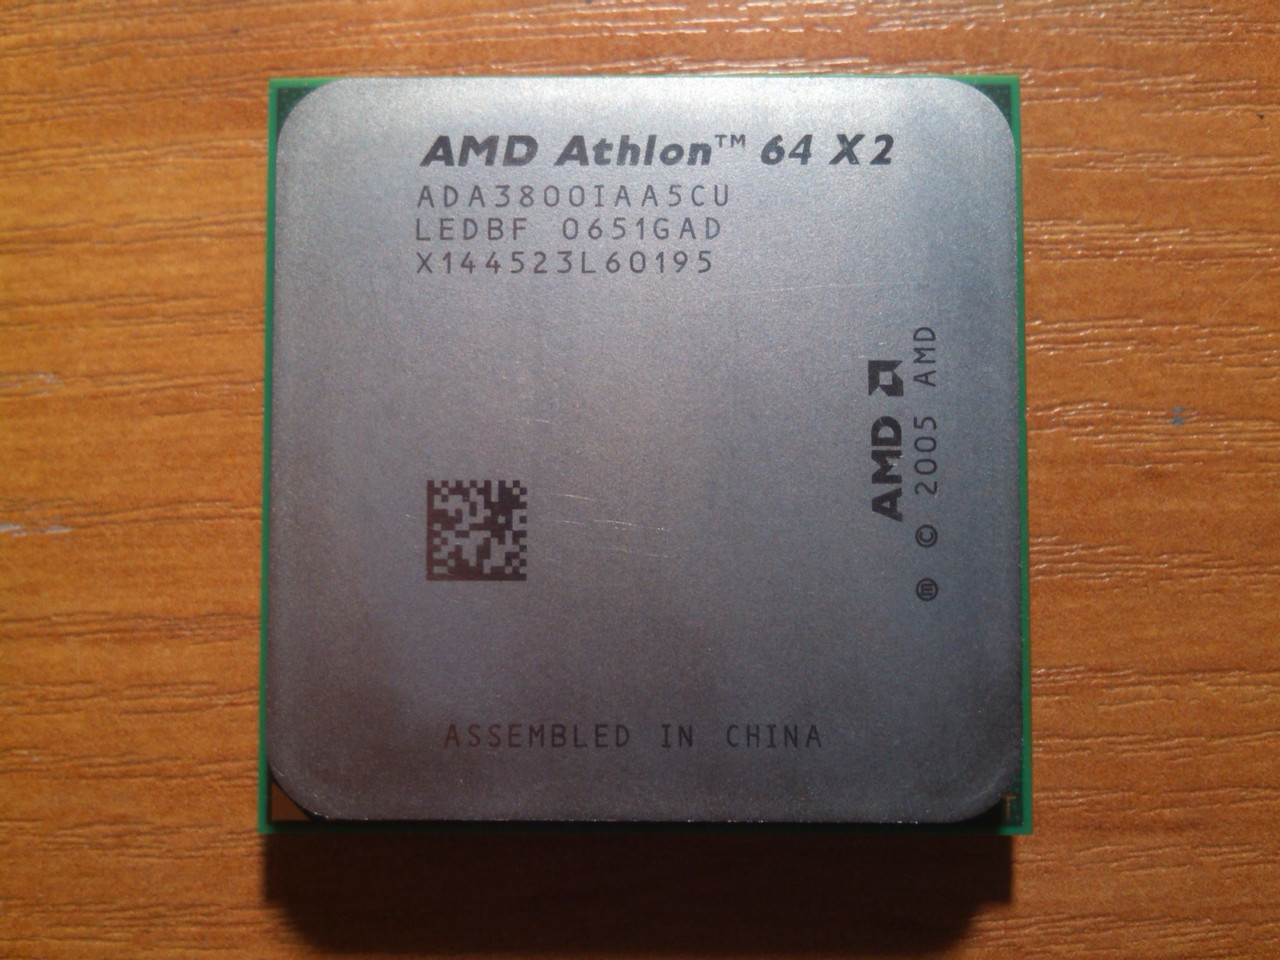 Amd athlon x2 сокет. AMD Athlon 64 x2 3800+. AMD Athlon 64 x2 ad04200iaa5cu. Системный блок AMD Athlon 64 x2. AMD x64.